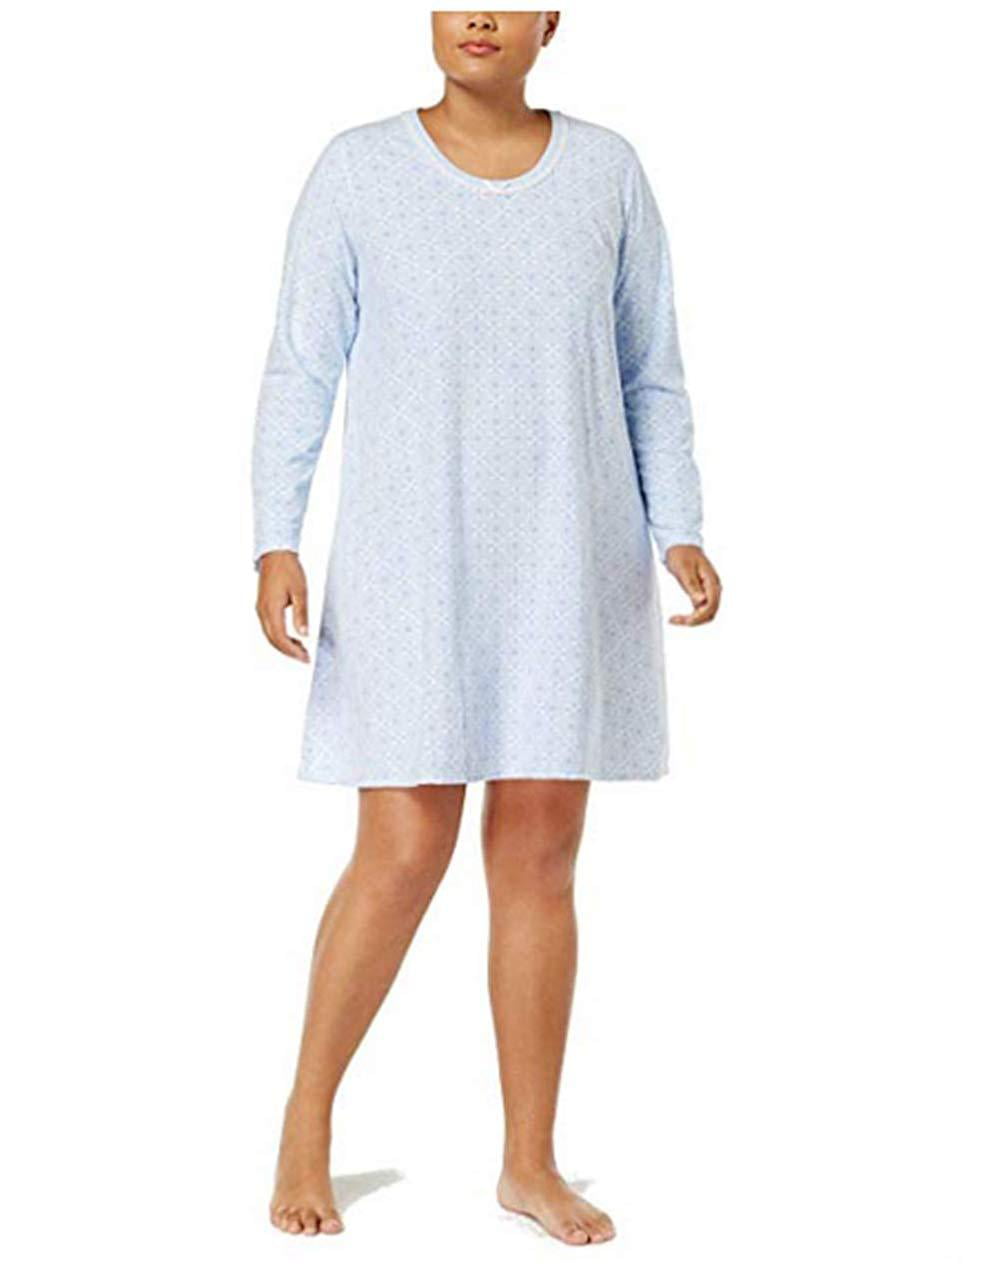 Details about   Rene Rofe Men's Bearly Awake Pajama Sleepwear Long Sleeve/Pant Set 